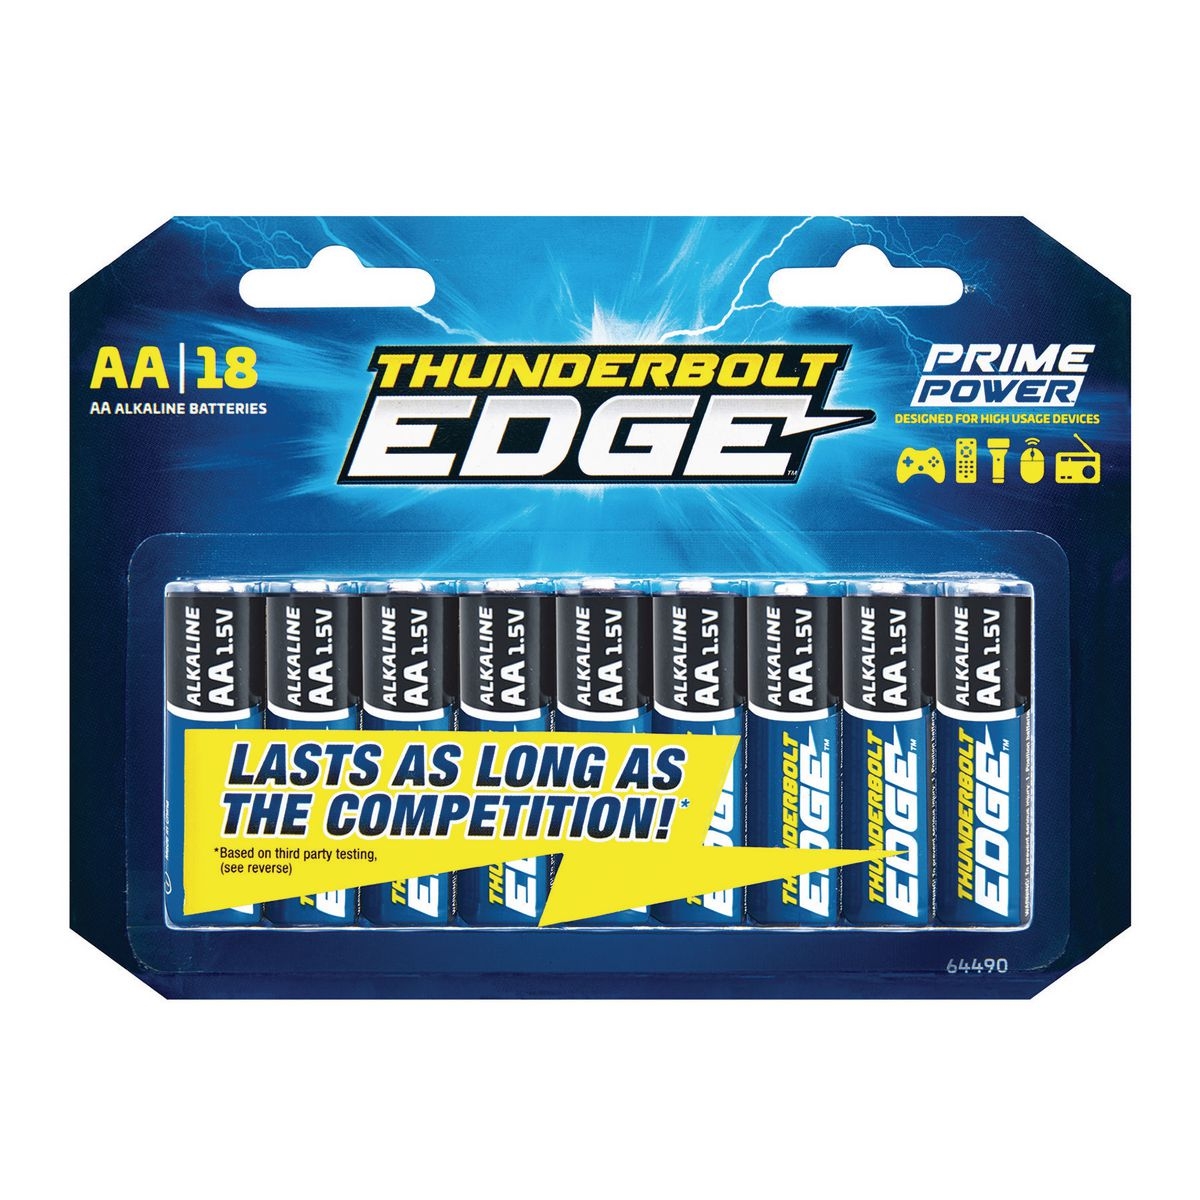 THUNDERBOLT EDGE Alkaline Batteries - Item 64490 / 64489